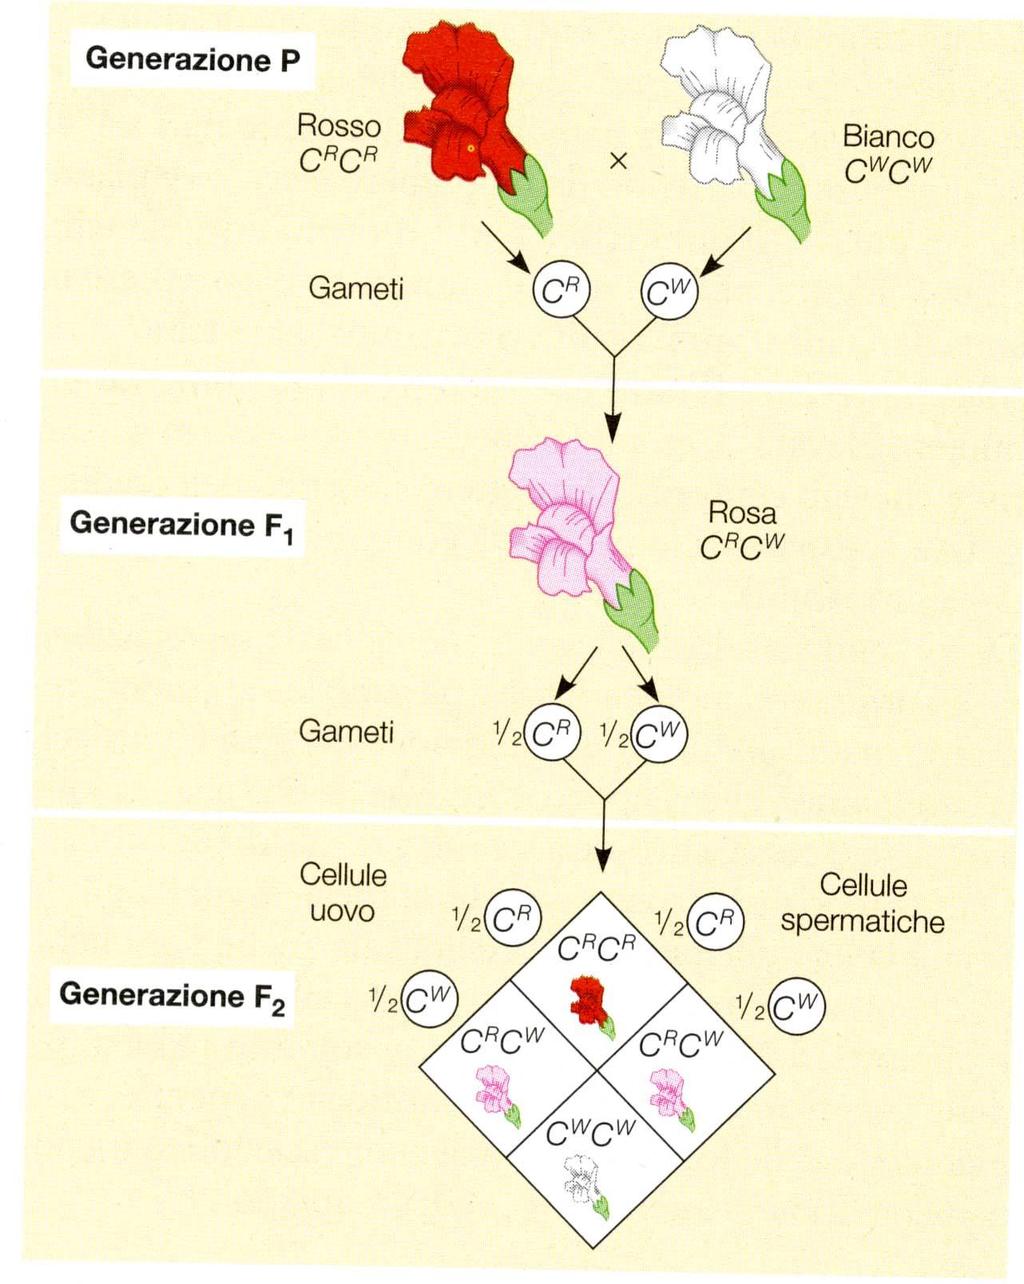 Raramente il rapporto tra genotipo e fenotipo è semplice Alcuni geni presentano alleli che non manifestano rapporti di dominanza o di recessività reciproca, ma gli